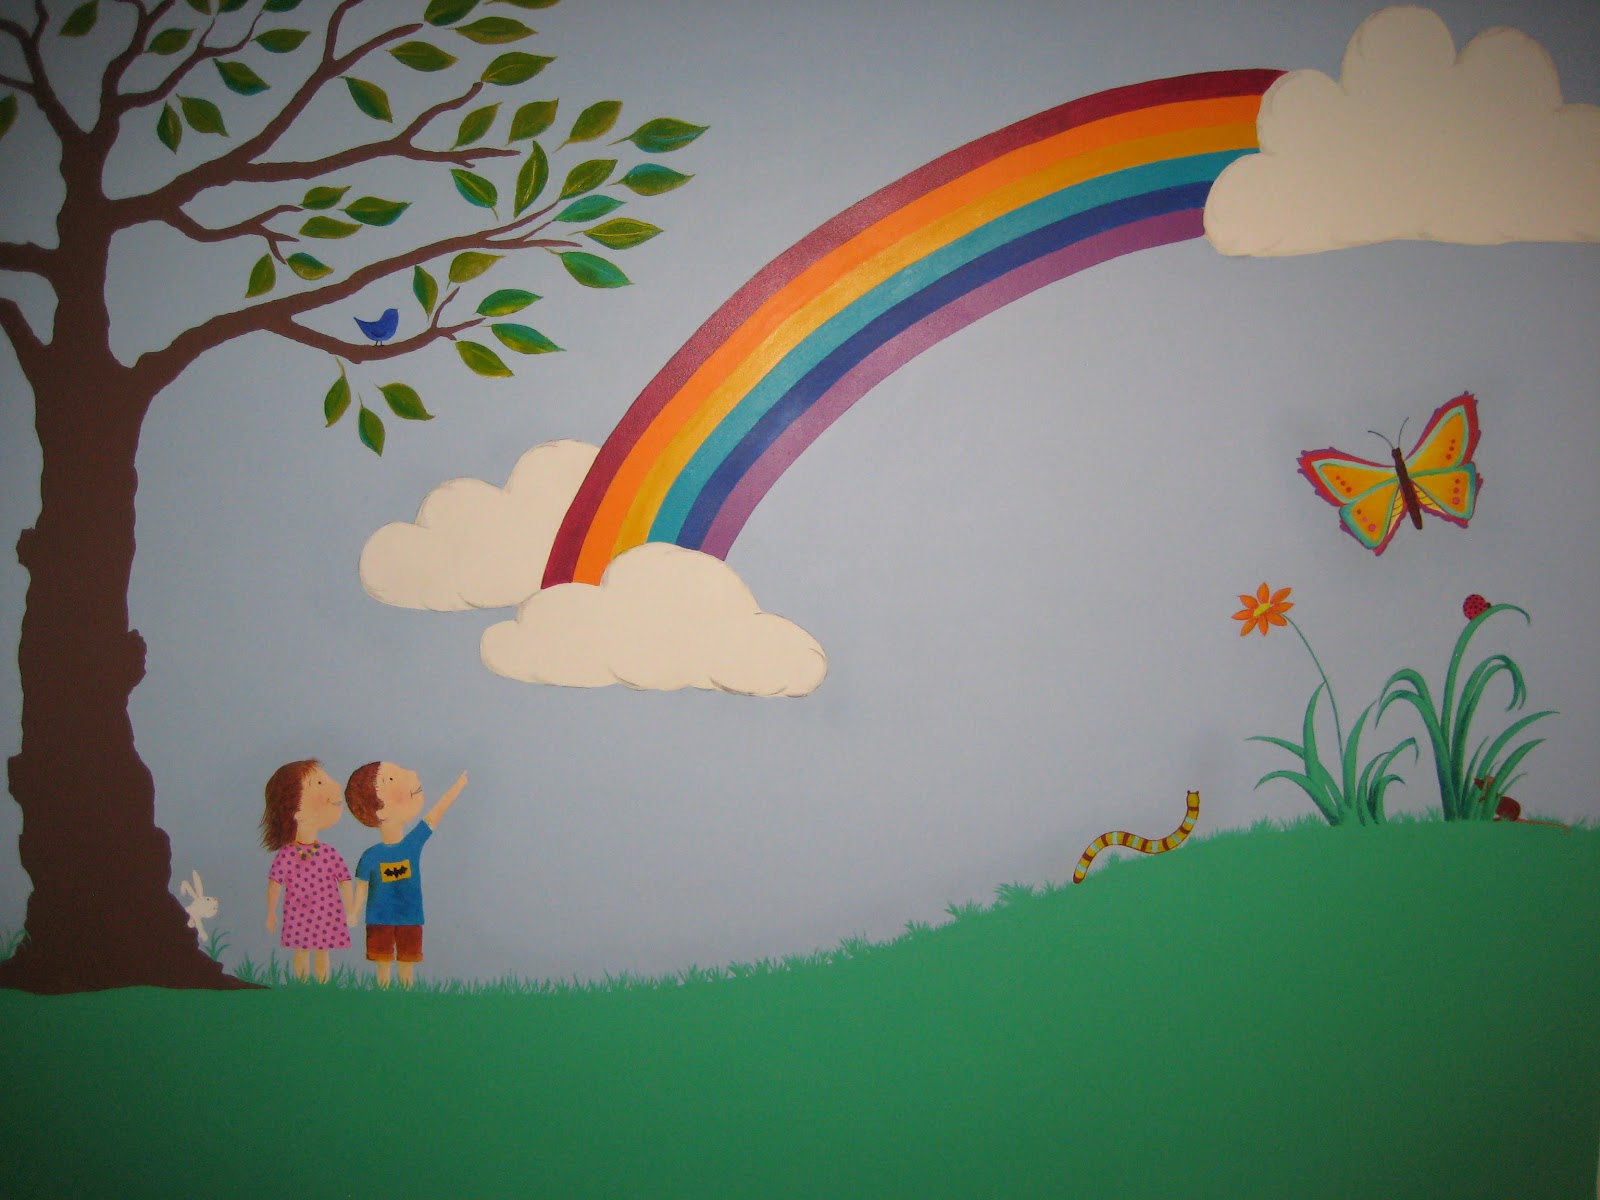 carta da parati arcobaleno per camera da letto,arcobaleno,murale,parete,pittura,cielo